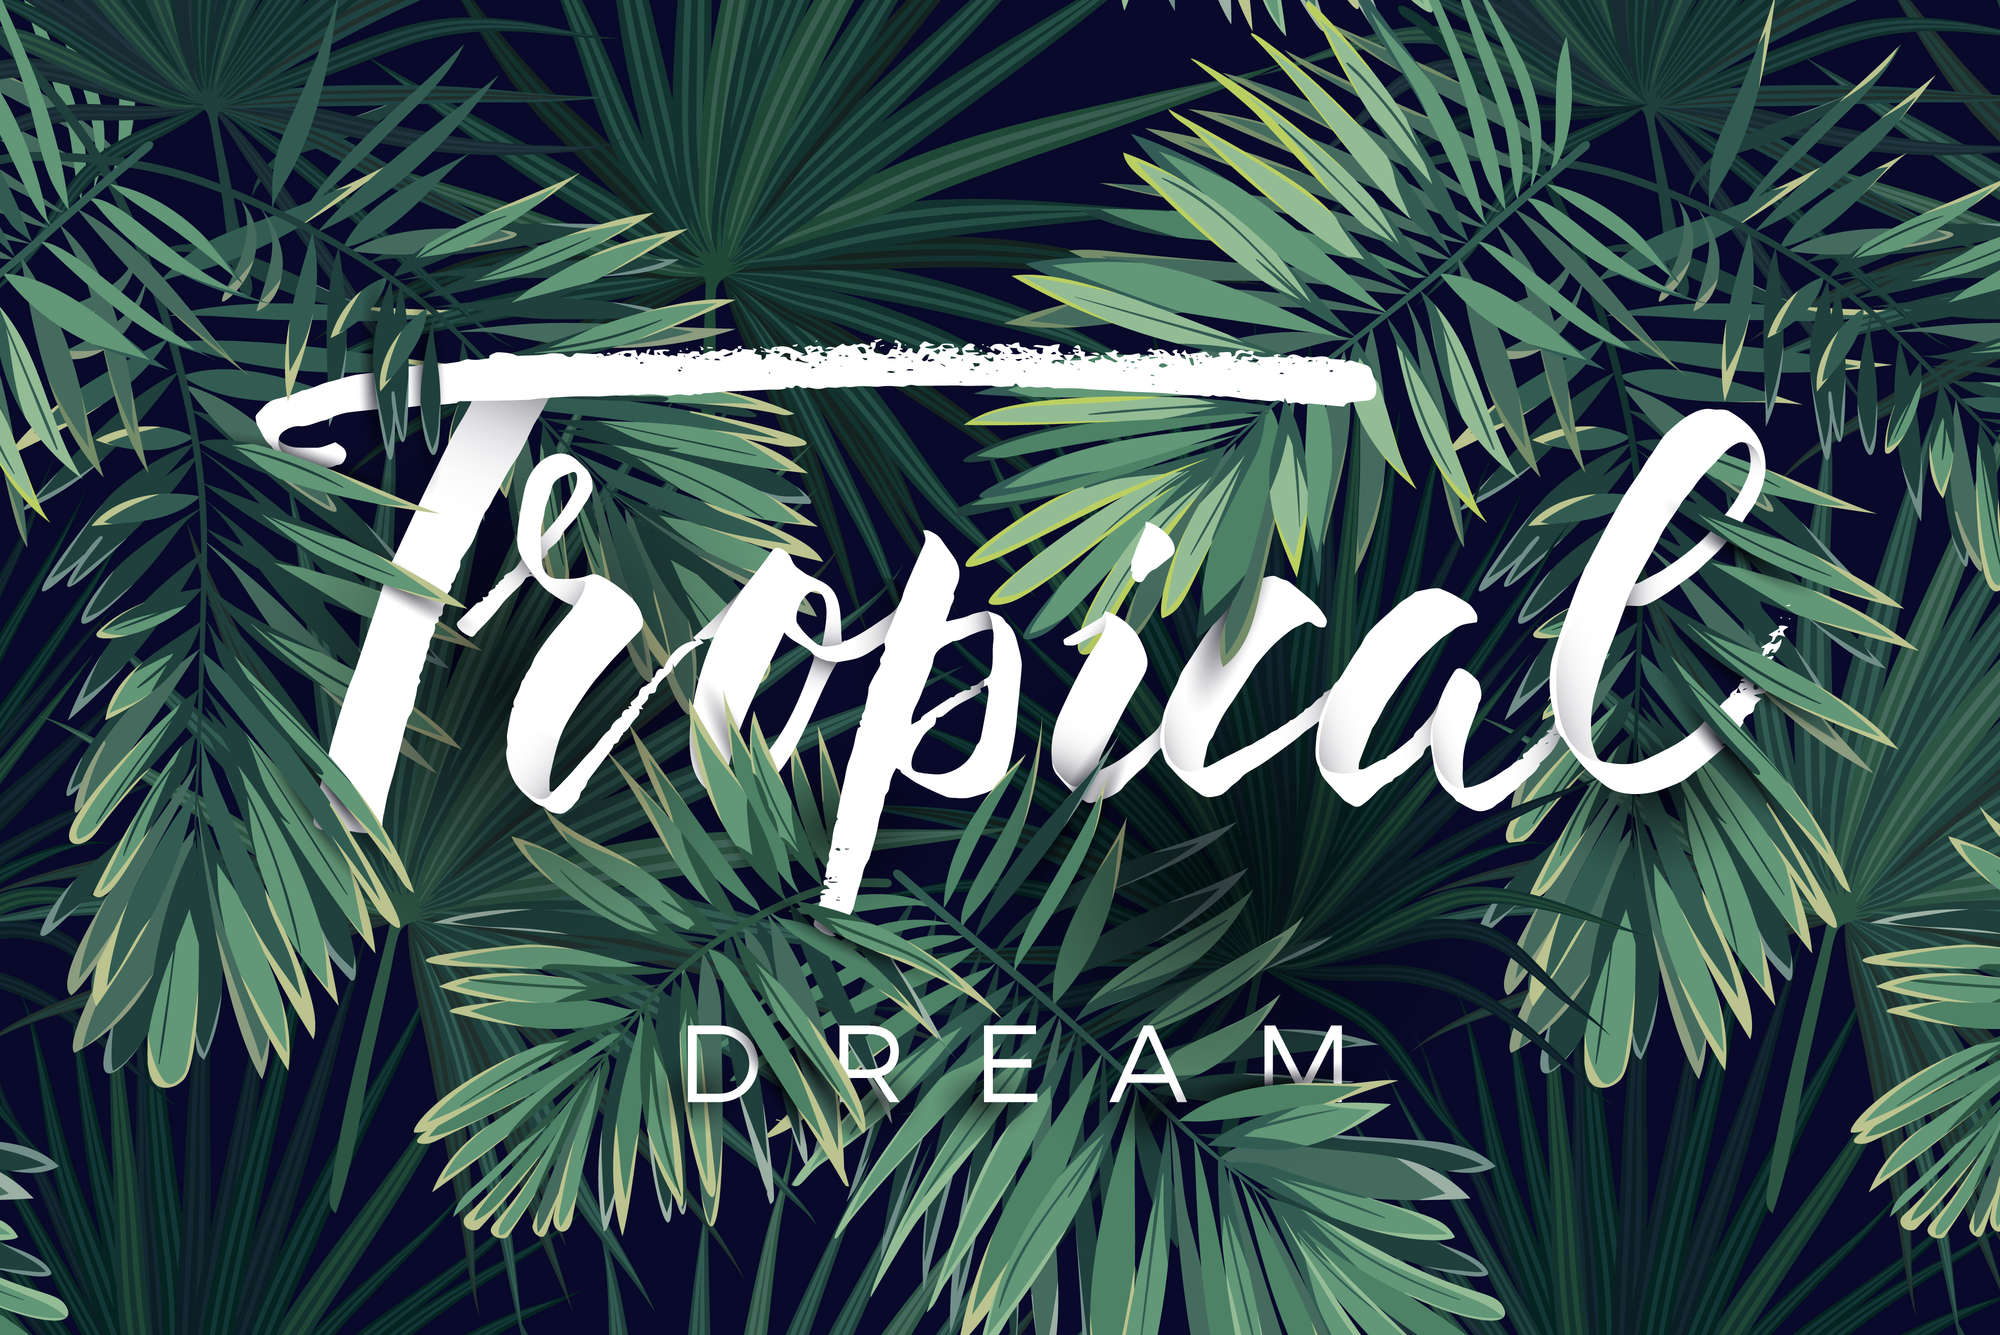             Grafisch behang "Tropical Dream" belettering op structuur fleece
        